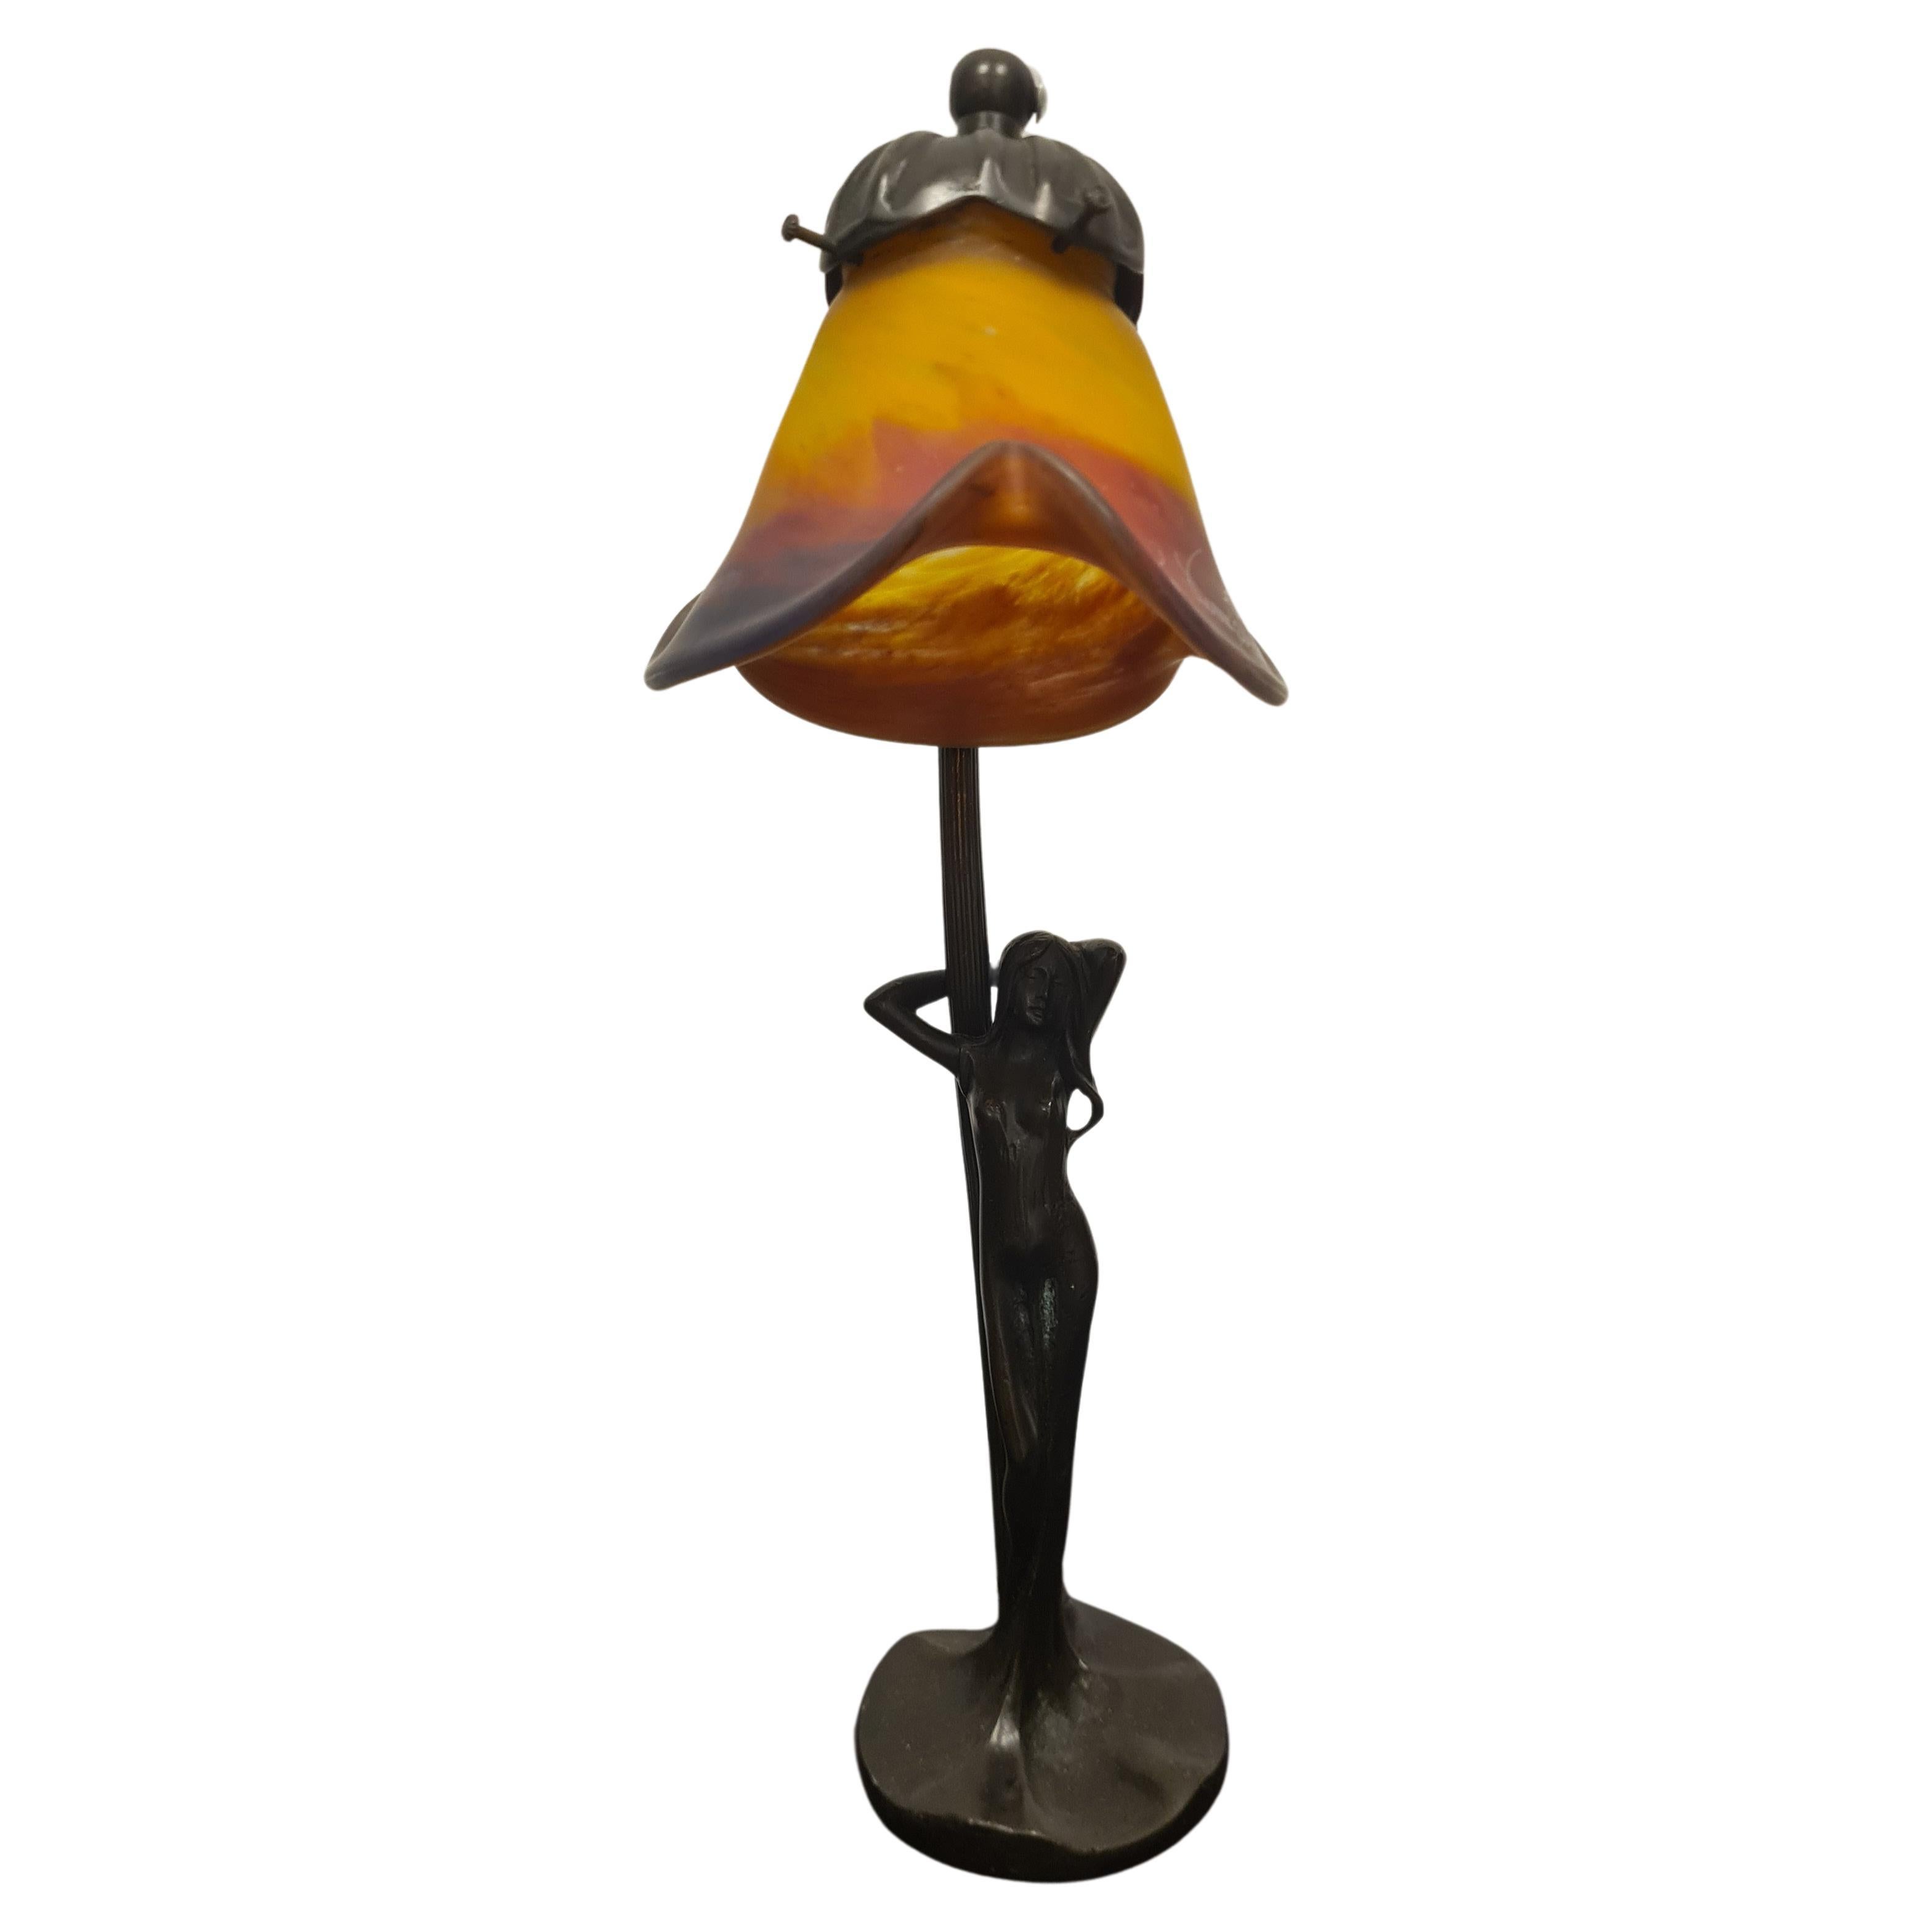 Art Nouveau lamp signed Le verre Francaise